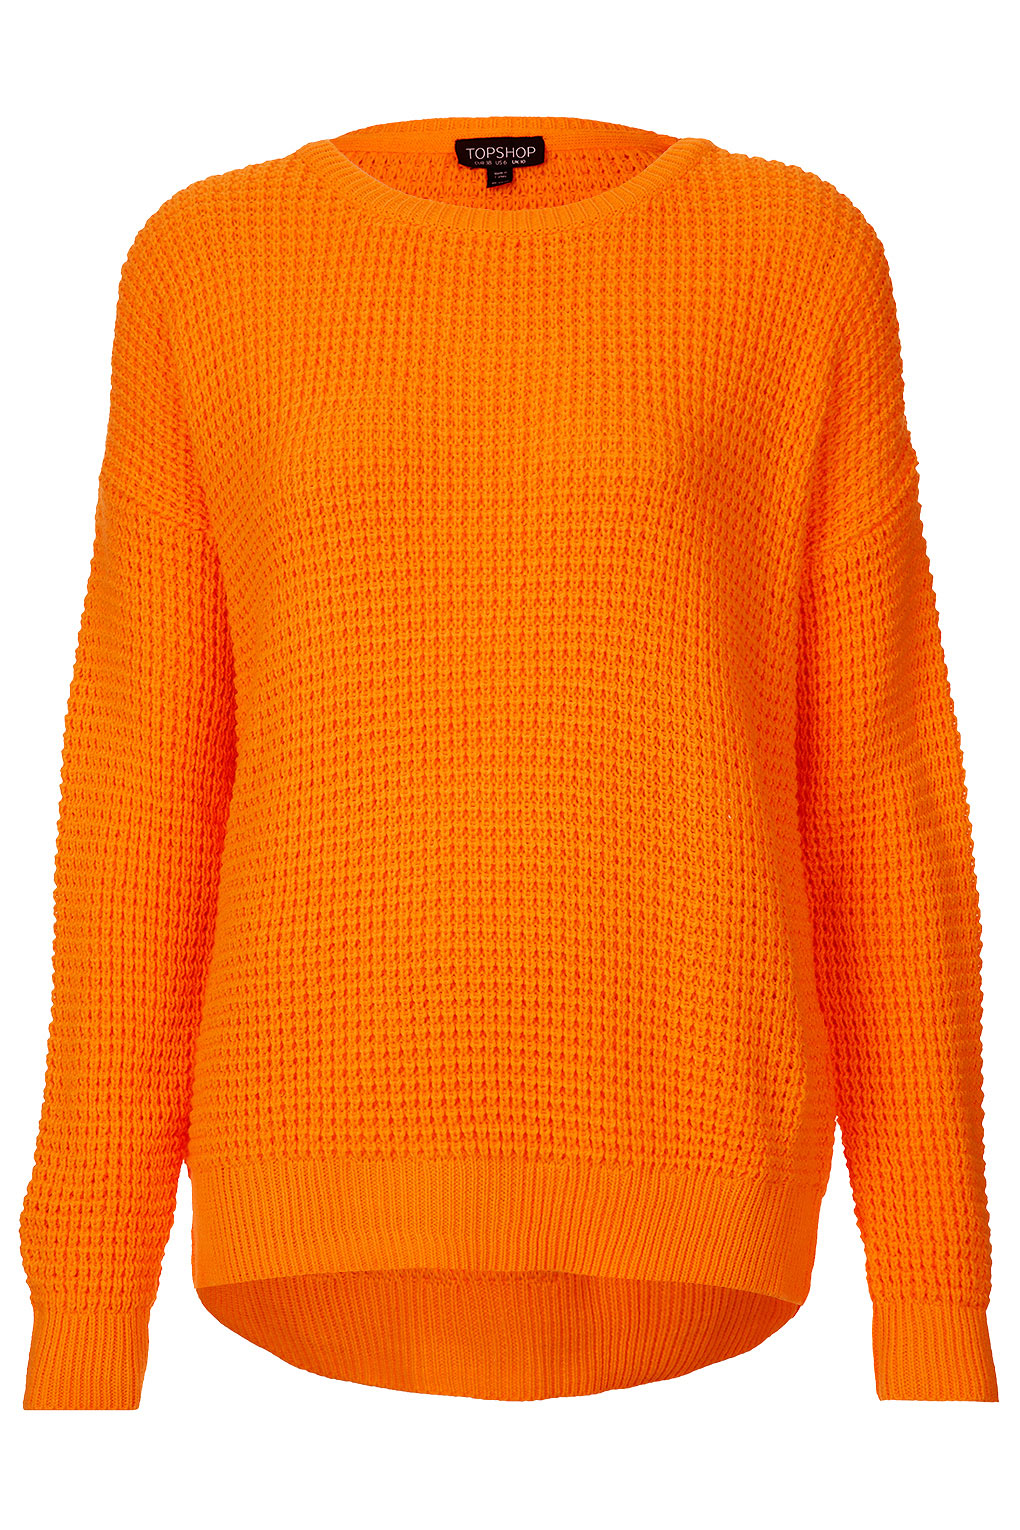 Lyst - Topshop Knitted Textured Stitch Jumper in Orange